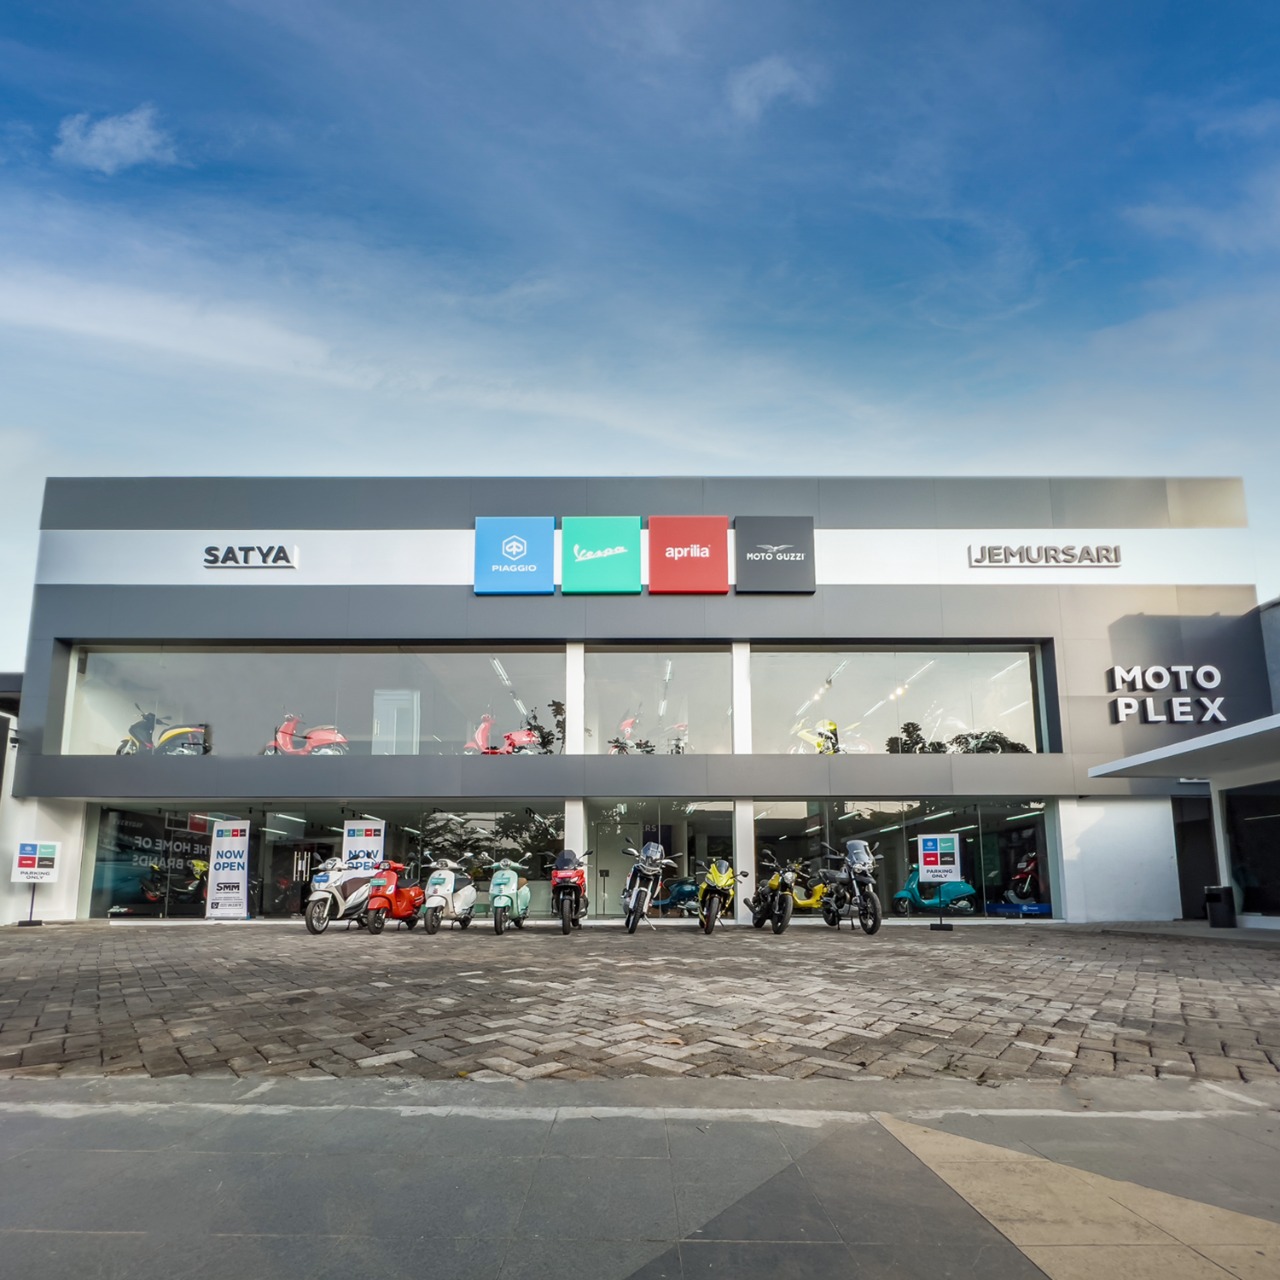 PT Piaggio Indonesia Buka Diler Premium Motoplex 4 Brands di Surabaya